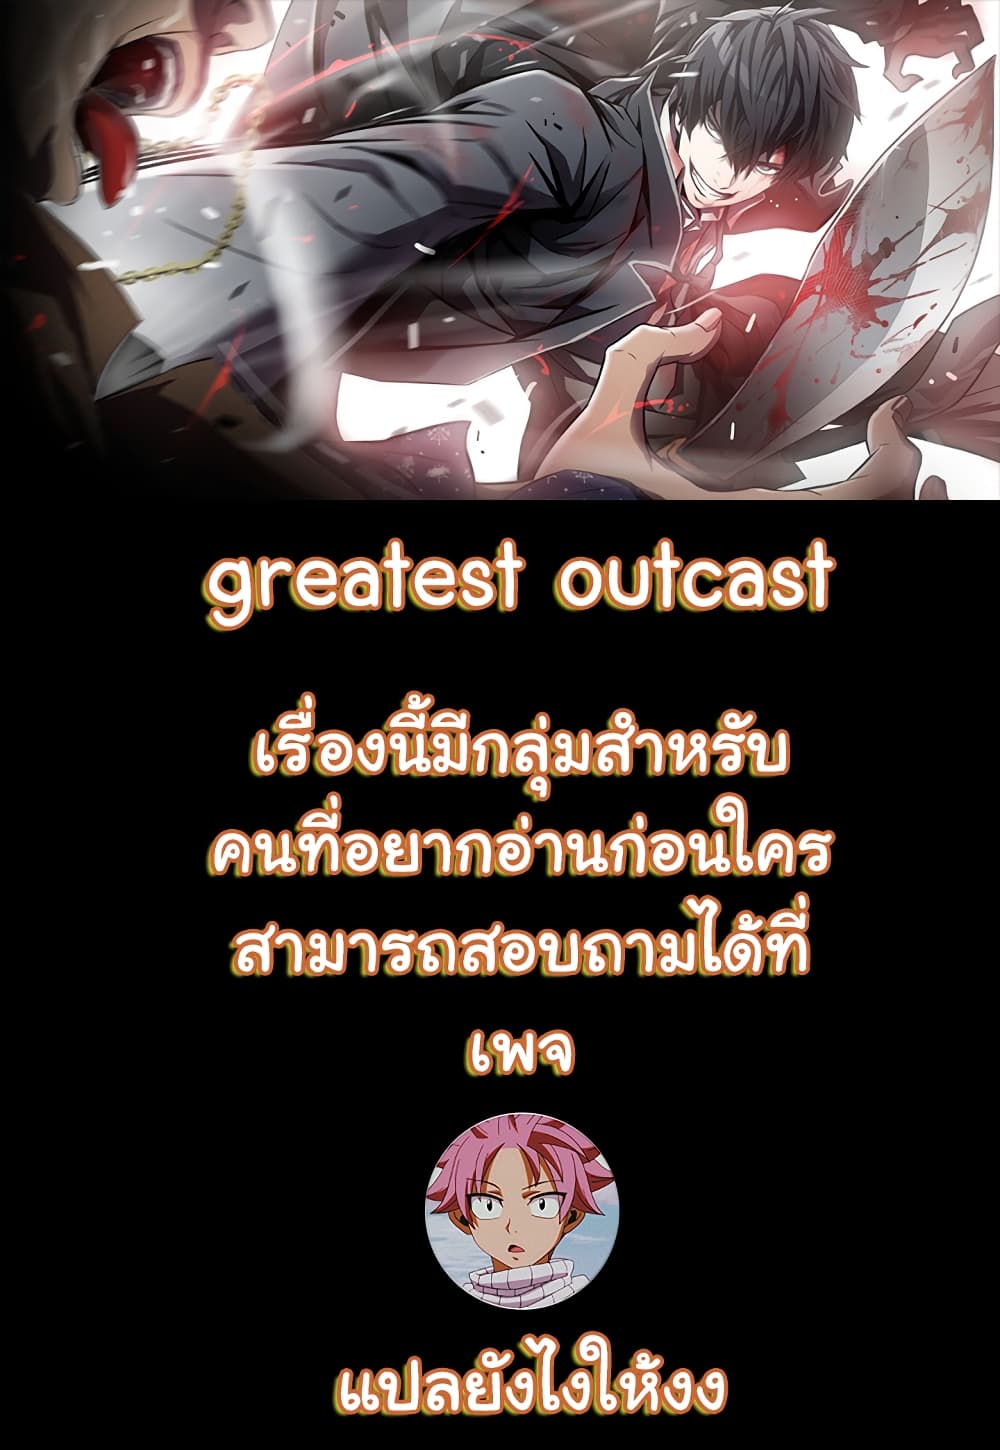 Greatest Outcast 6 (1)